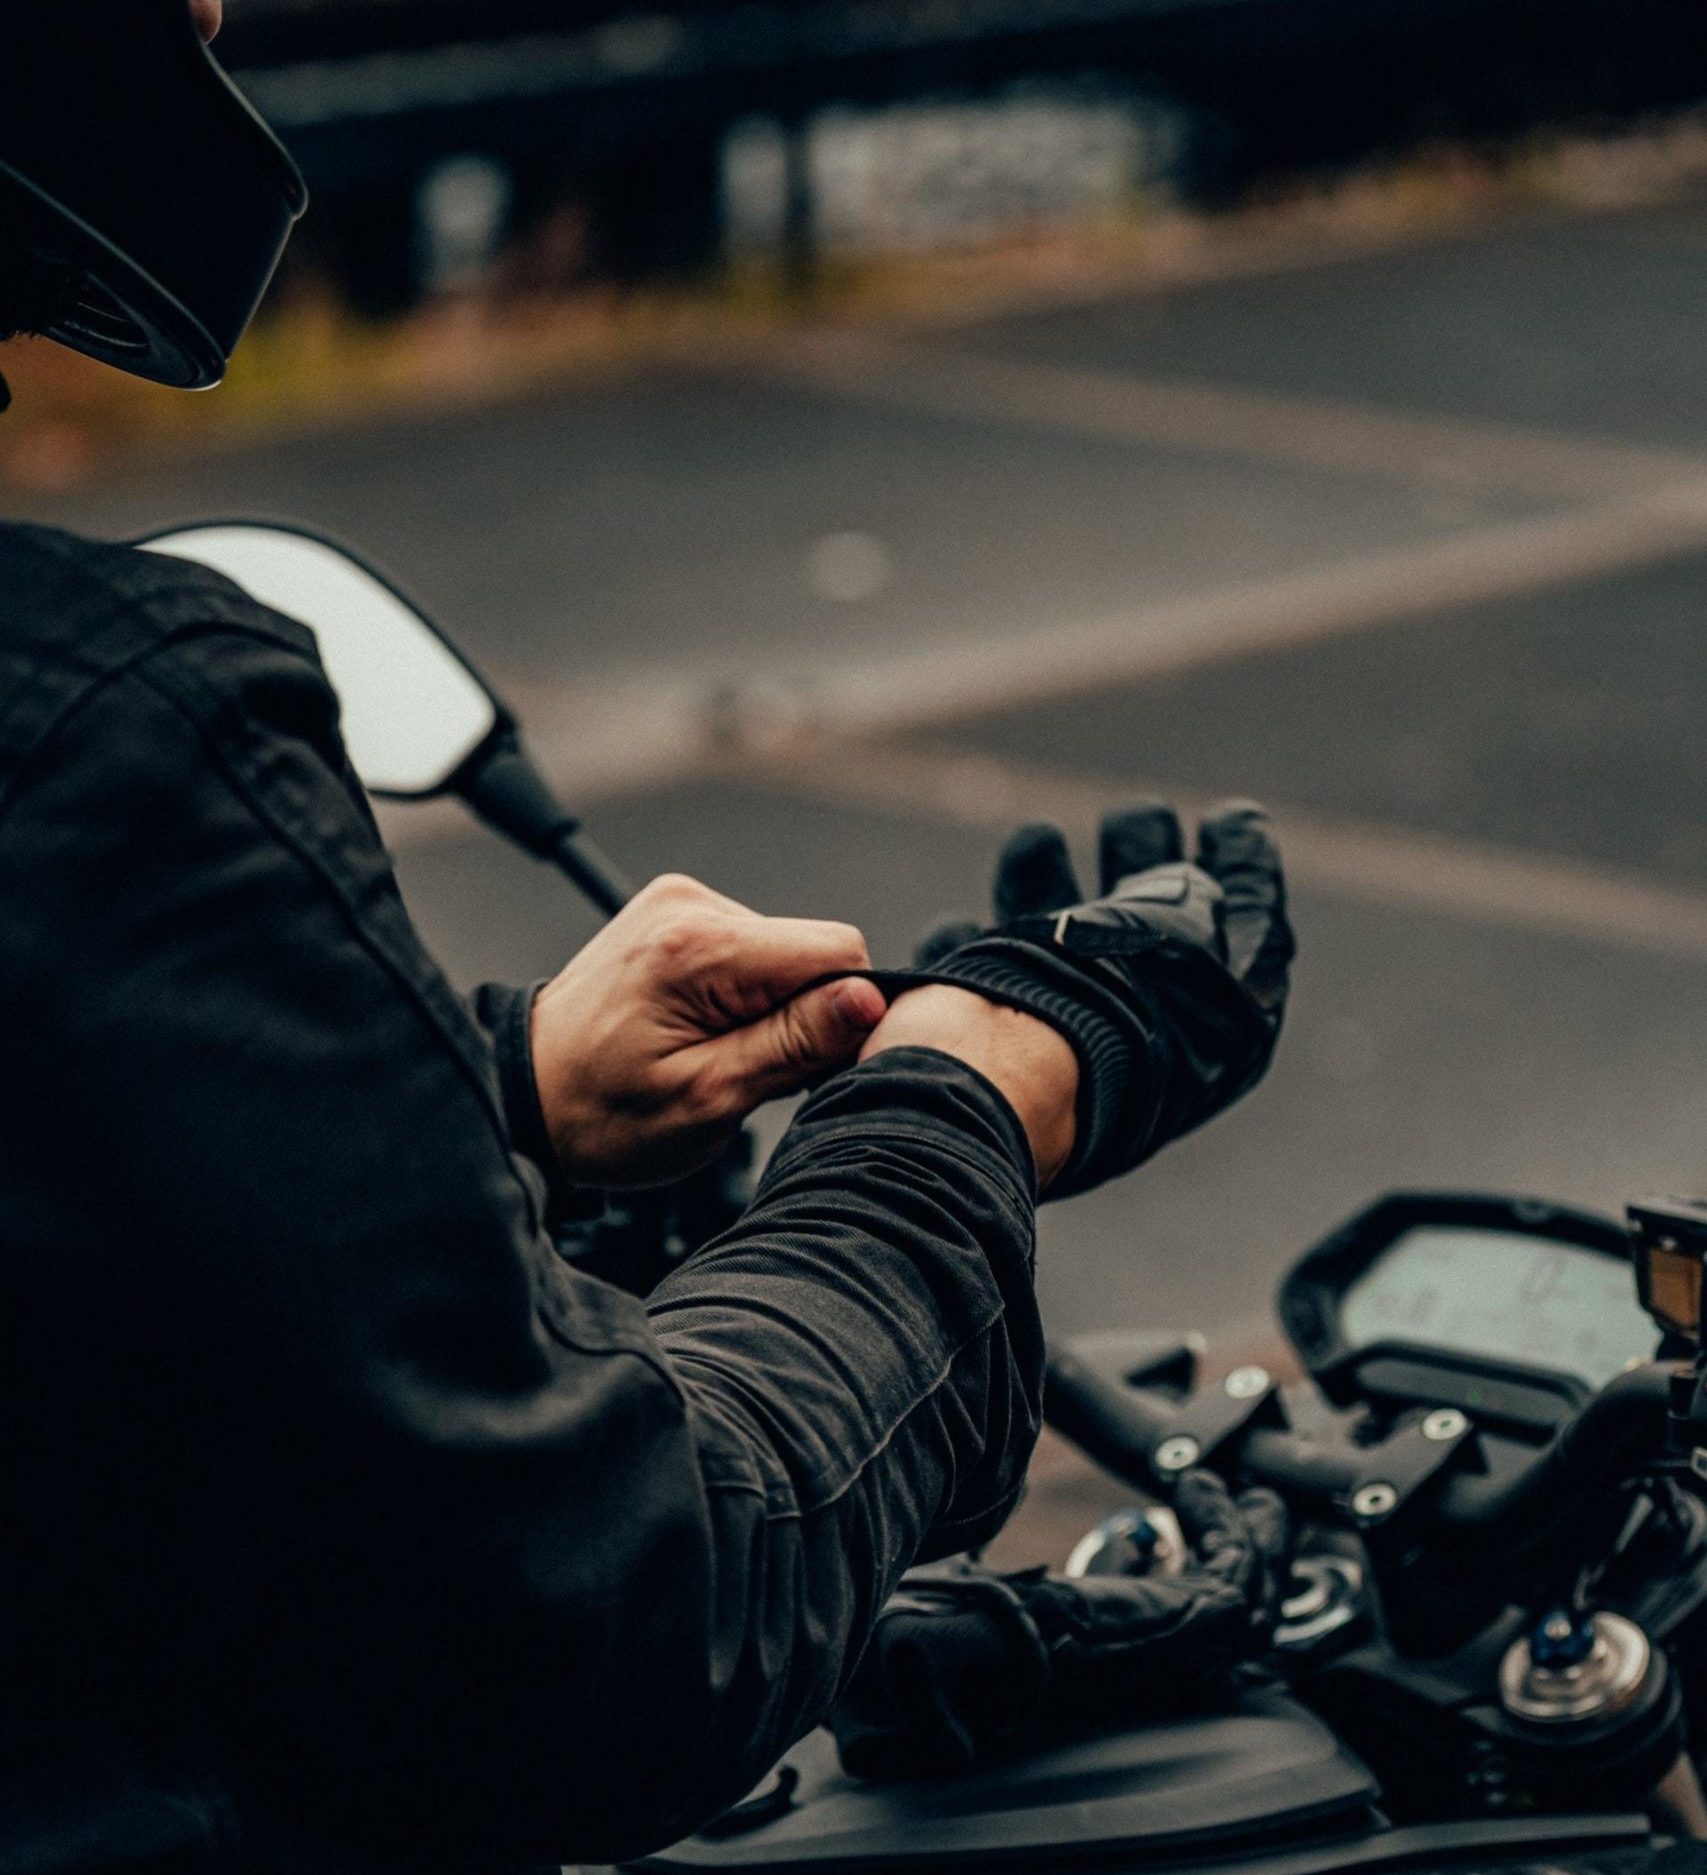 5 para elegir los guantes de moto adecuados (+1 de regalo) | Diariomotor